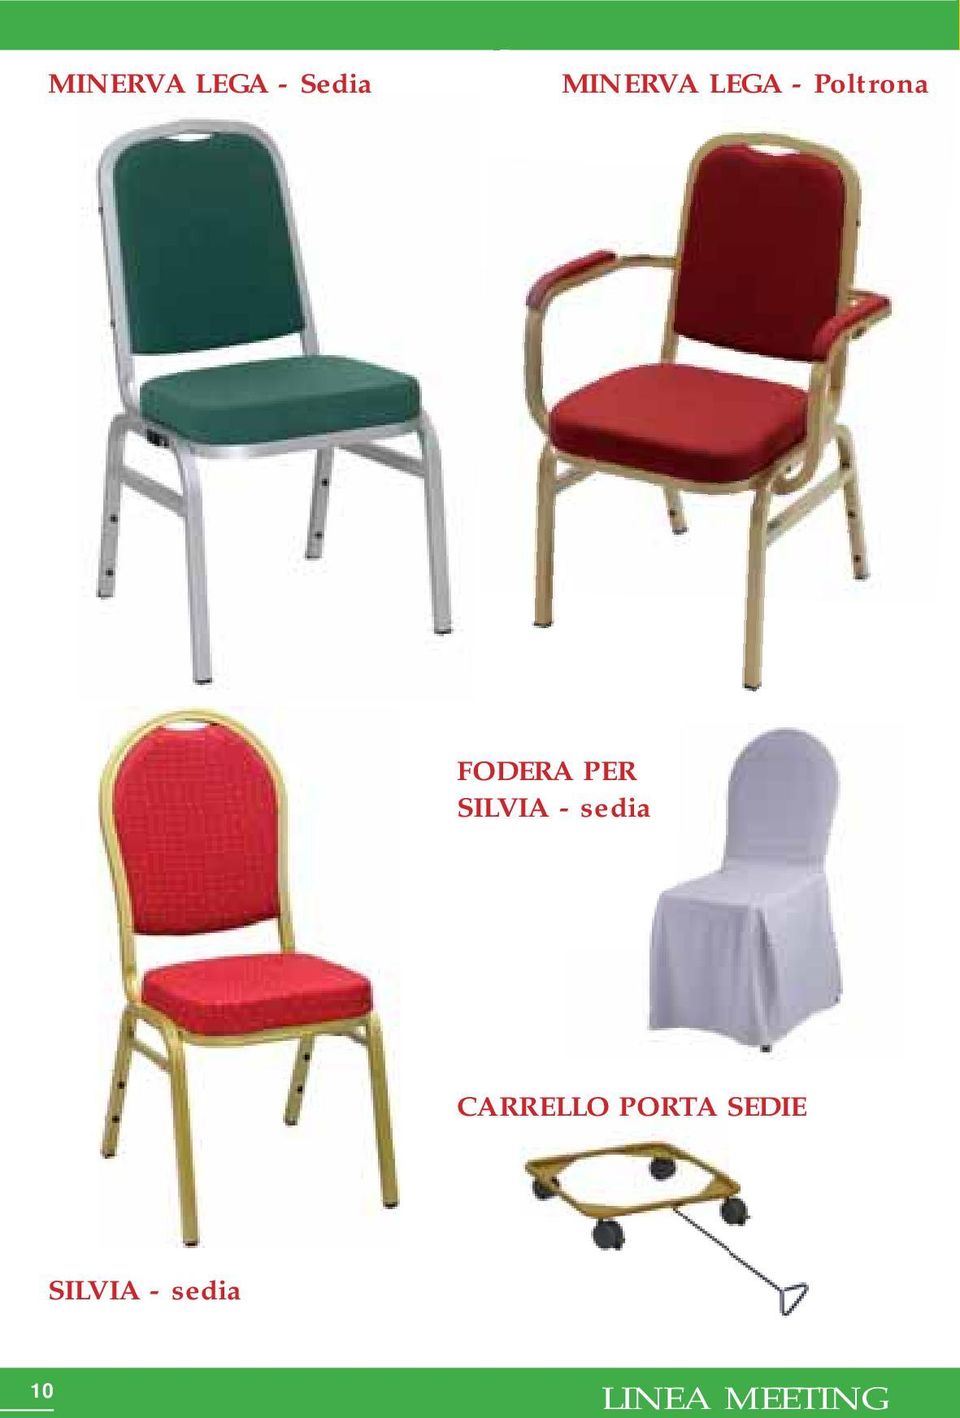 SILVIA - sedia CARRELLO PORTA